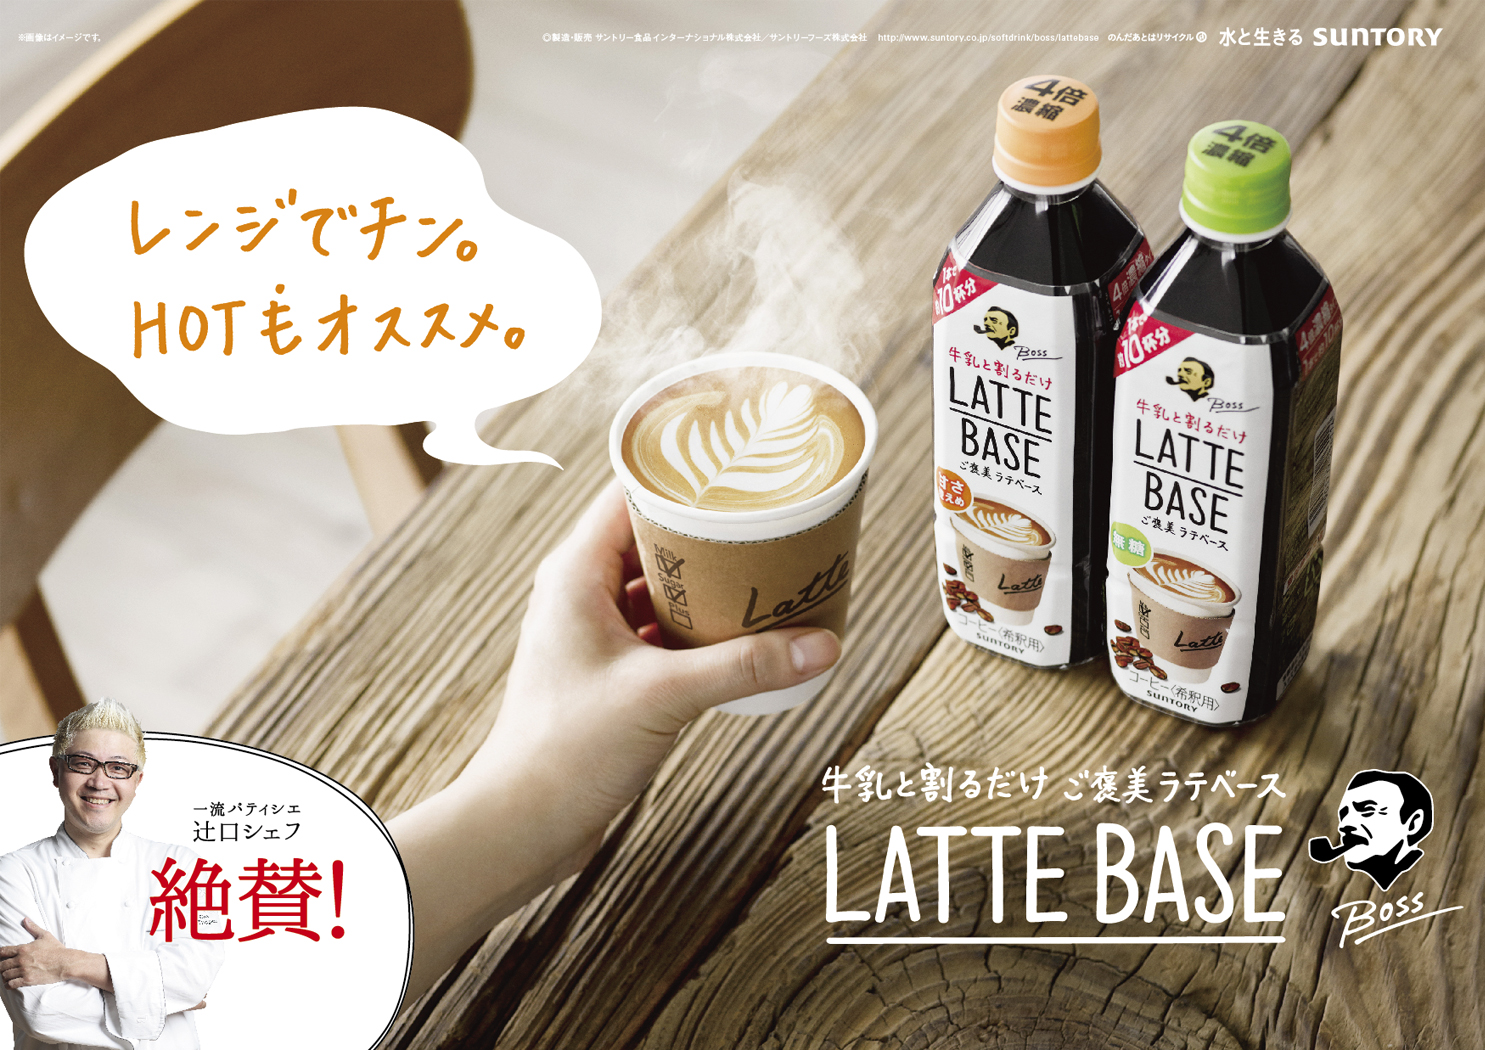 Suntory boss LatteBase B3board